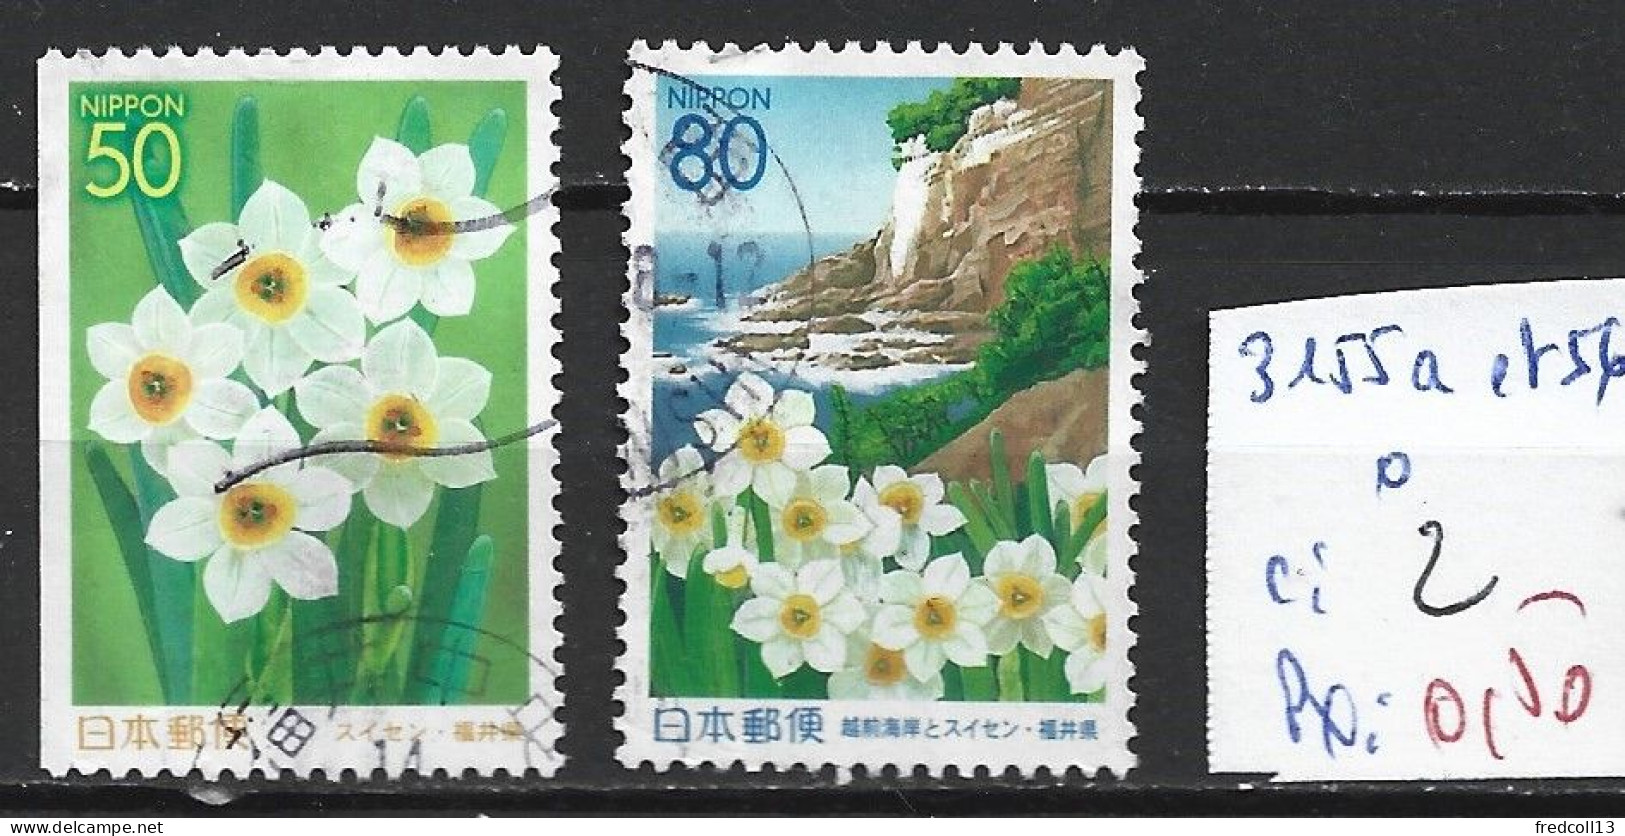 JAPON 3155a-56 Oblitérés Côte 2 € - Used Stamps